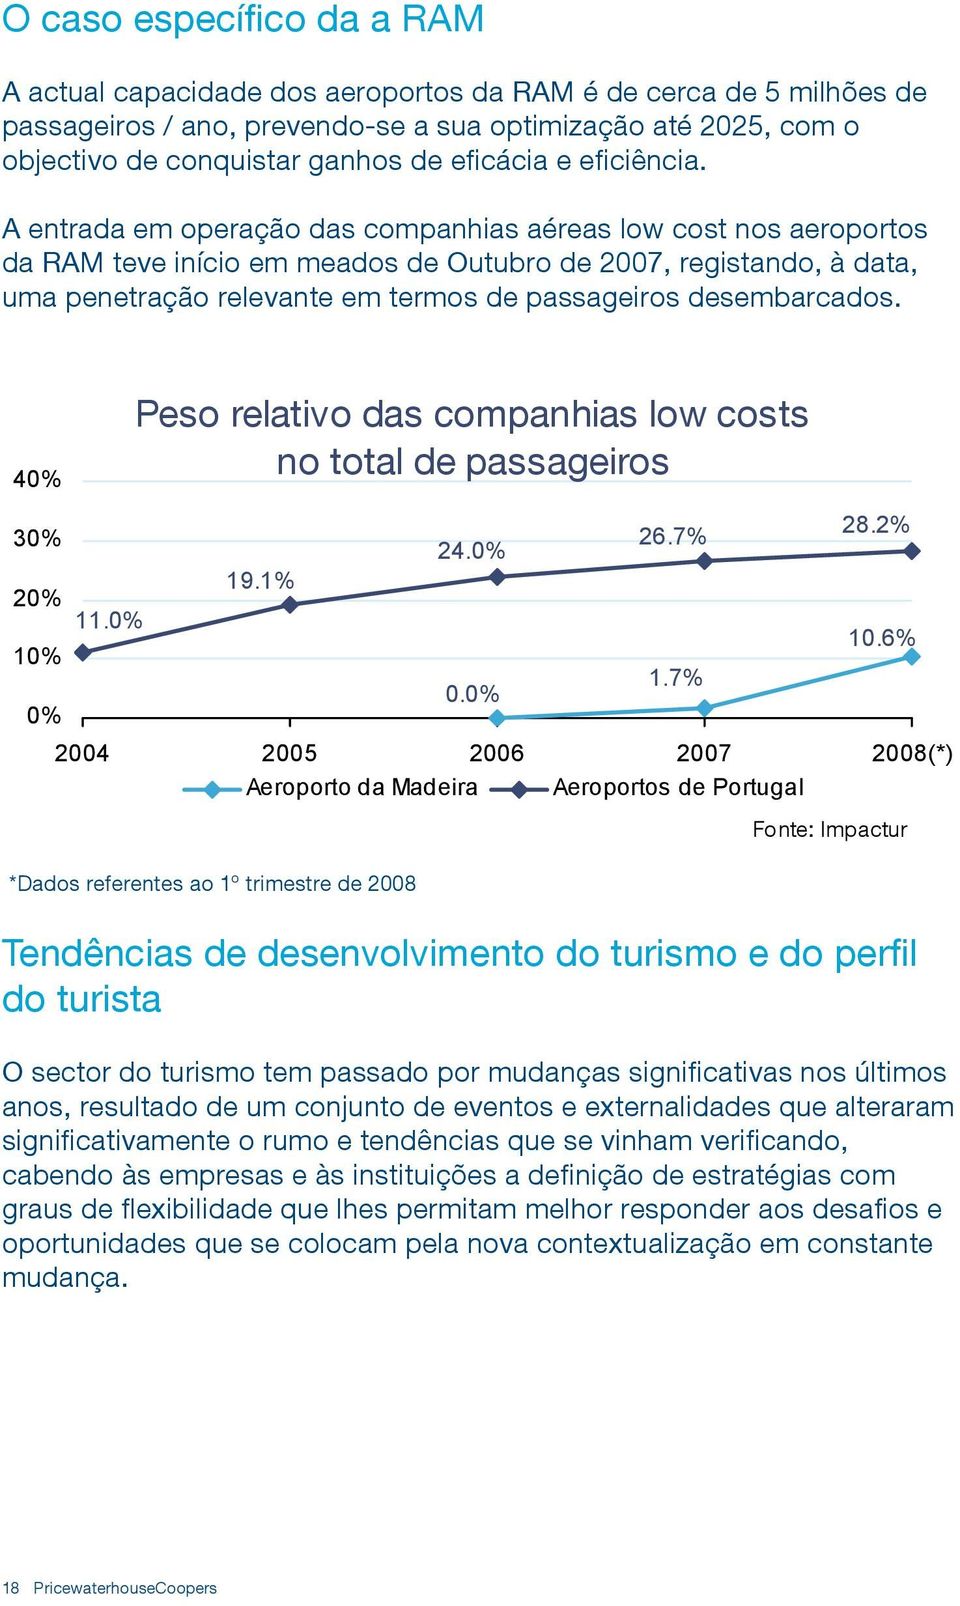 A entrada em operação das companhias aéreas low cost nos aeroportos da RAM teve início em meados de Outubro de 2007, registando, à data, uma penetração relevante em termos de passageiros